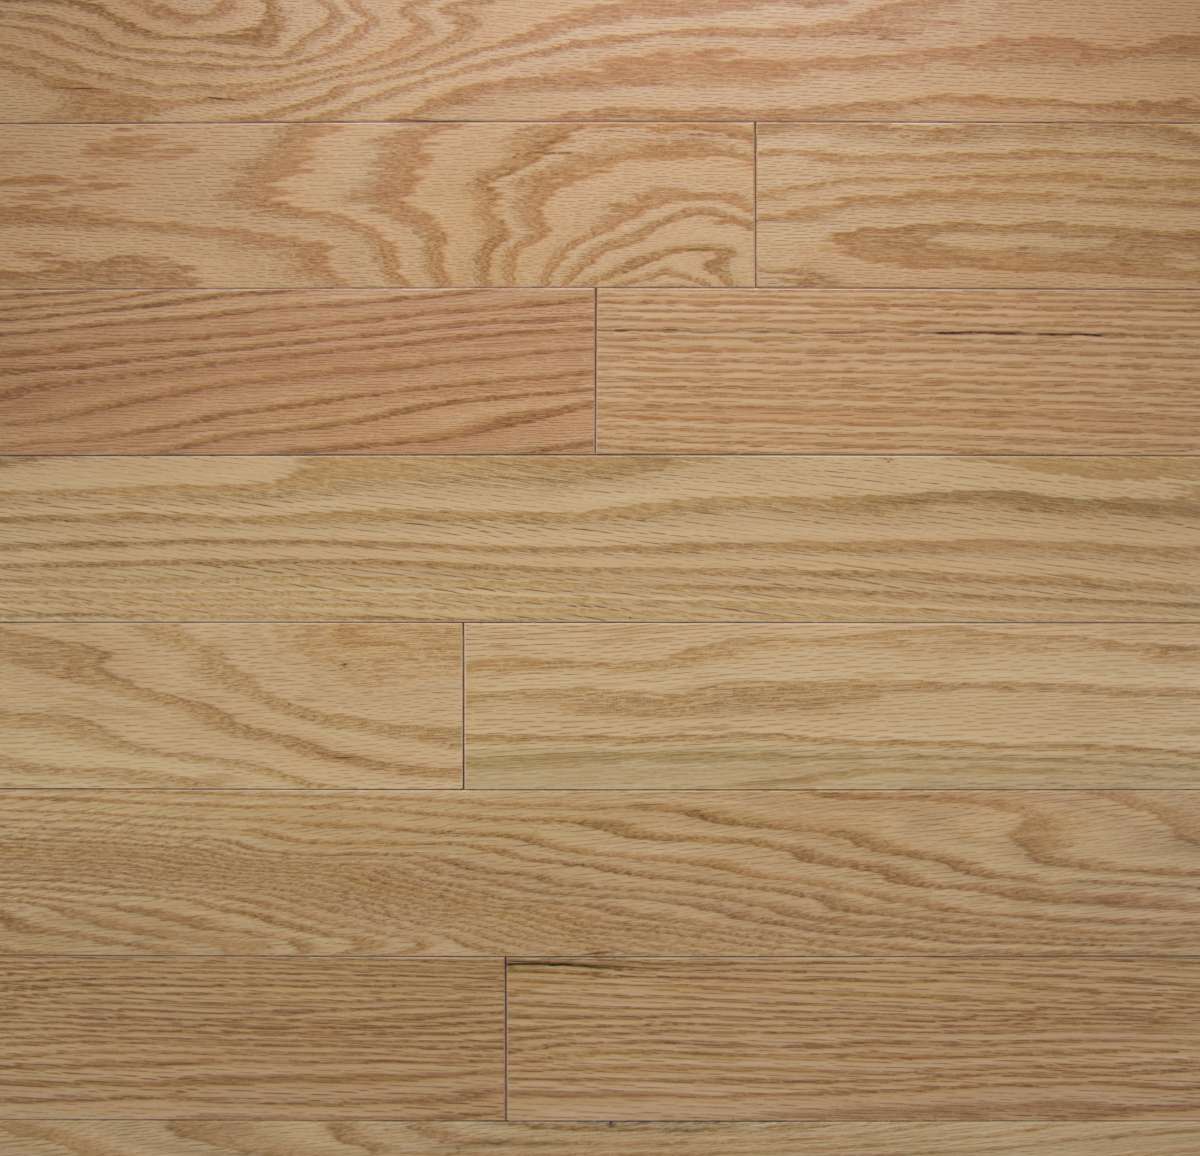 Somerset Hardwood Flooring, Oak Hardwood Floor Colors